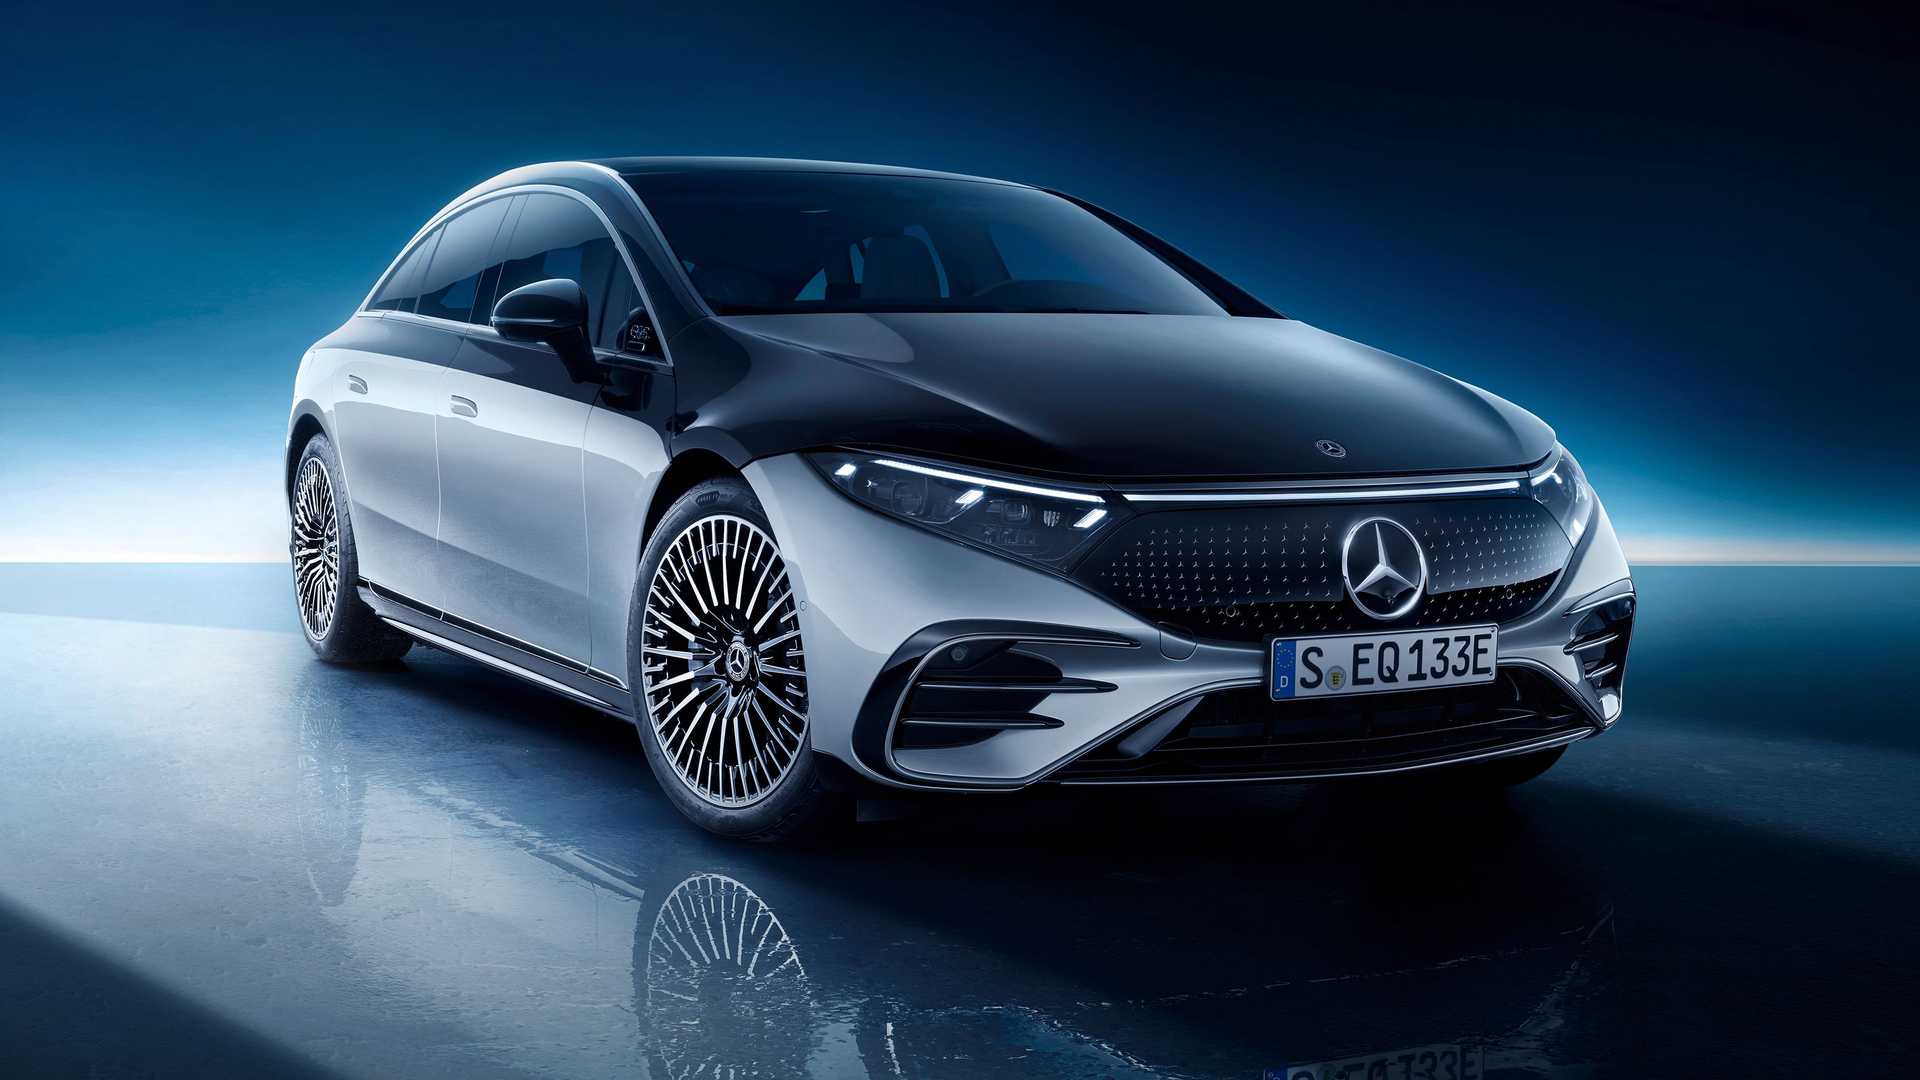 Mercedes-Benz cho người dùng chơi xếp hình, Sudoku ngay trên xe với giá hơn 2 triệu/năm - Ảnh 1.